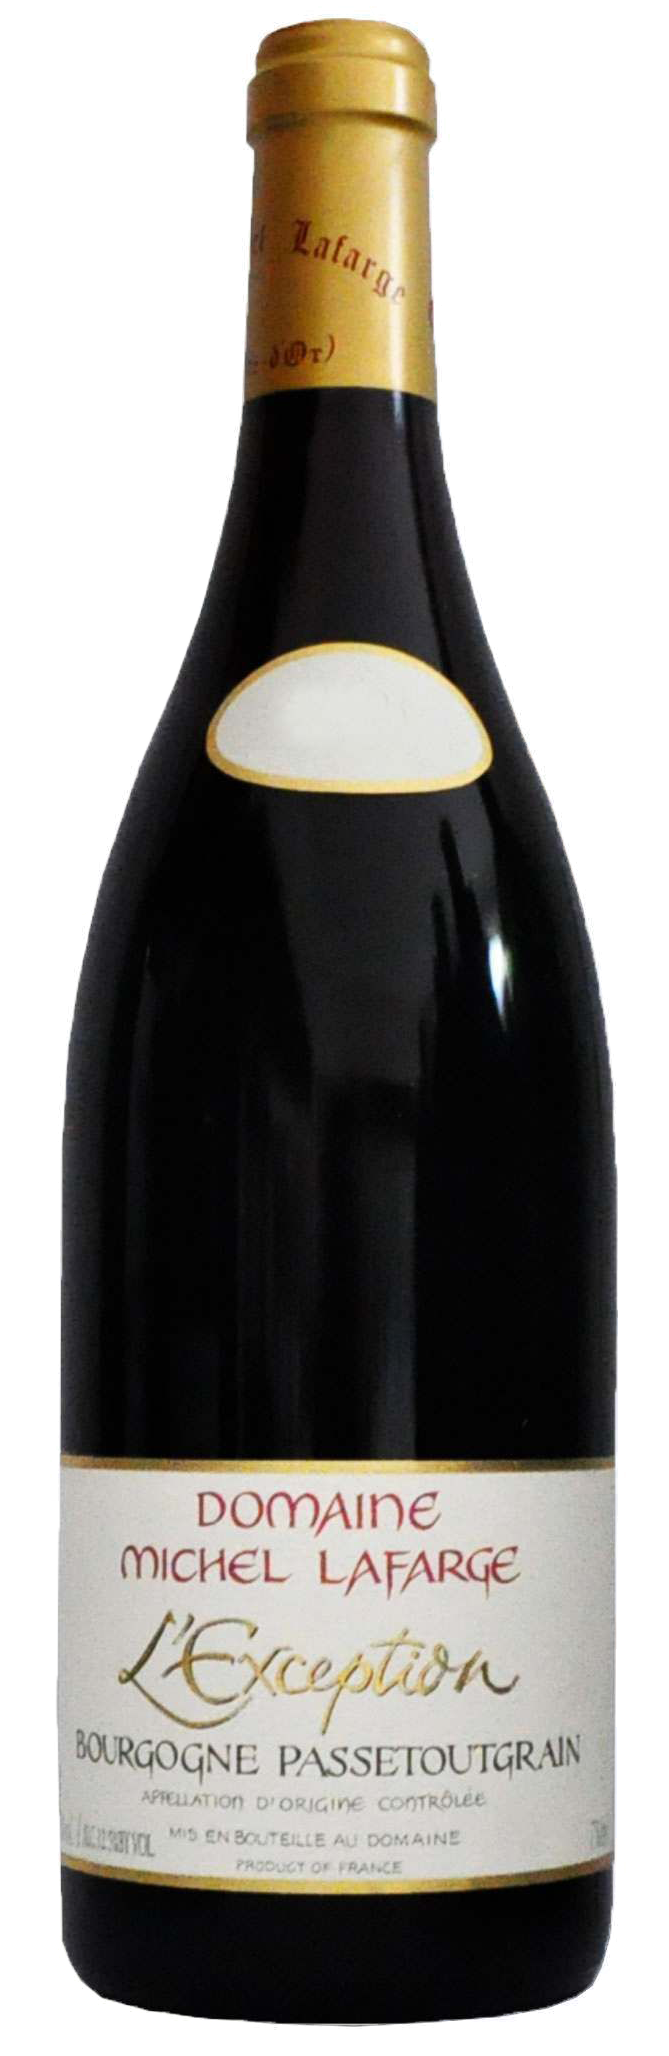 Bottle shot of 2021 Bourgogne Passetoutgrain L'Exception